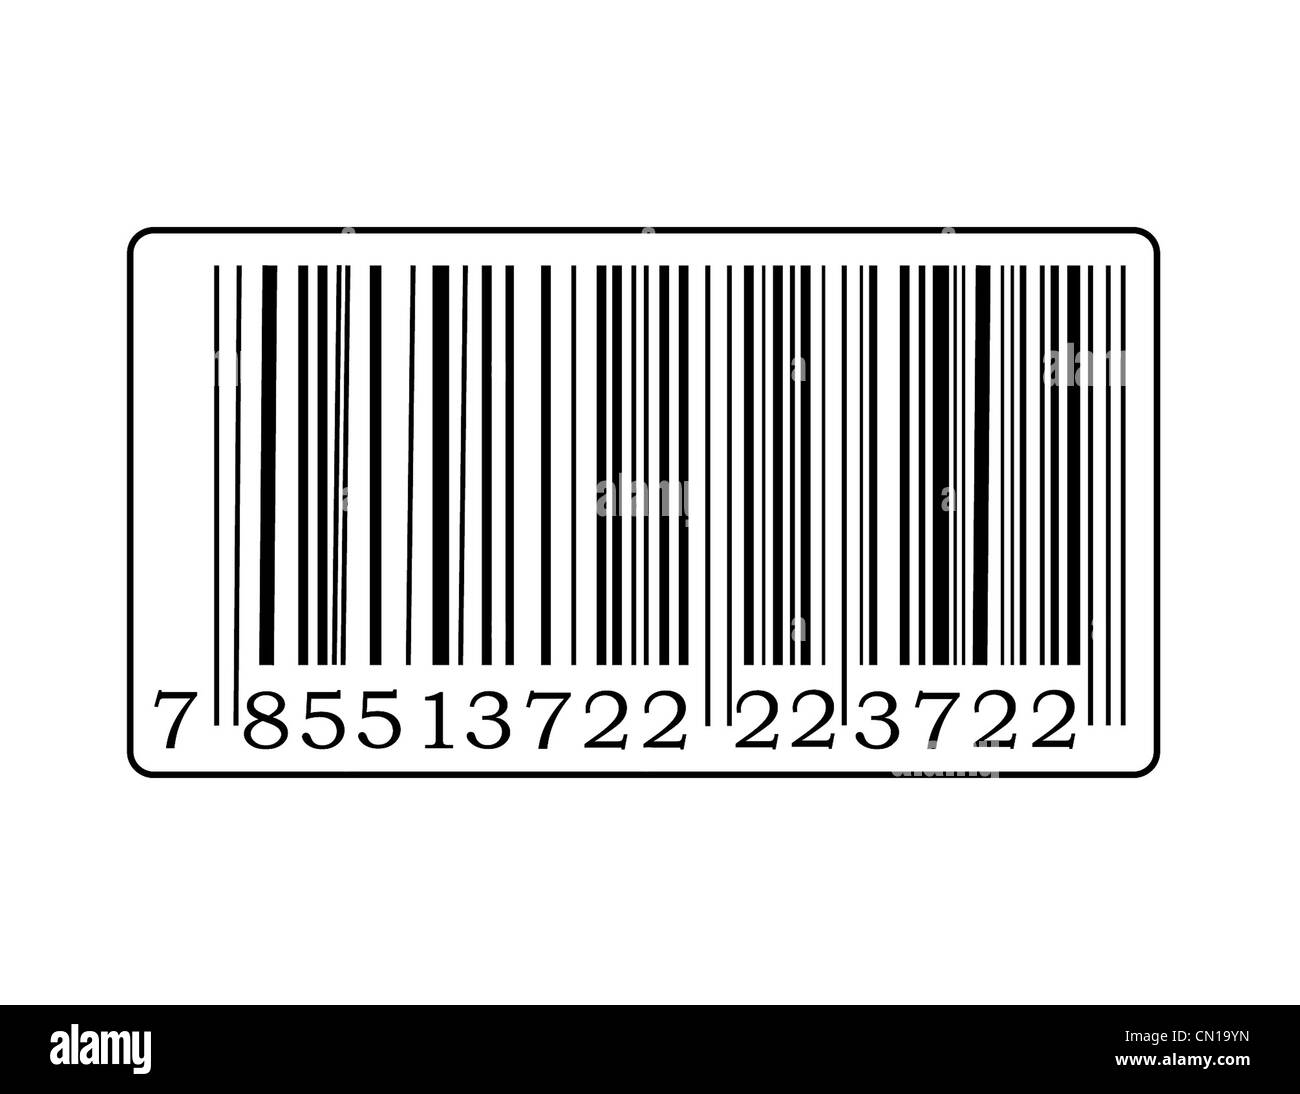 Trastorno oficial Obstinado Detalle de etiqueta de código de barras con el número Fotografía de stock -  Alamy